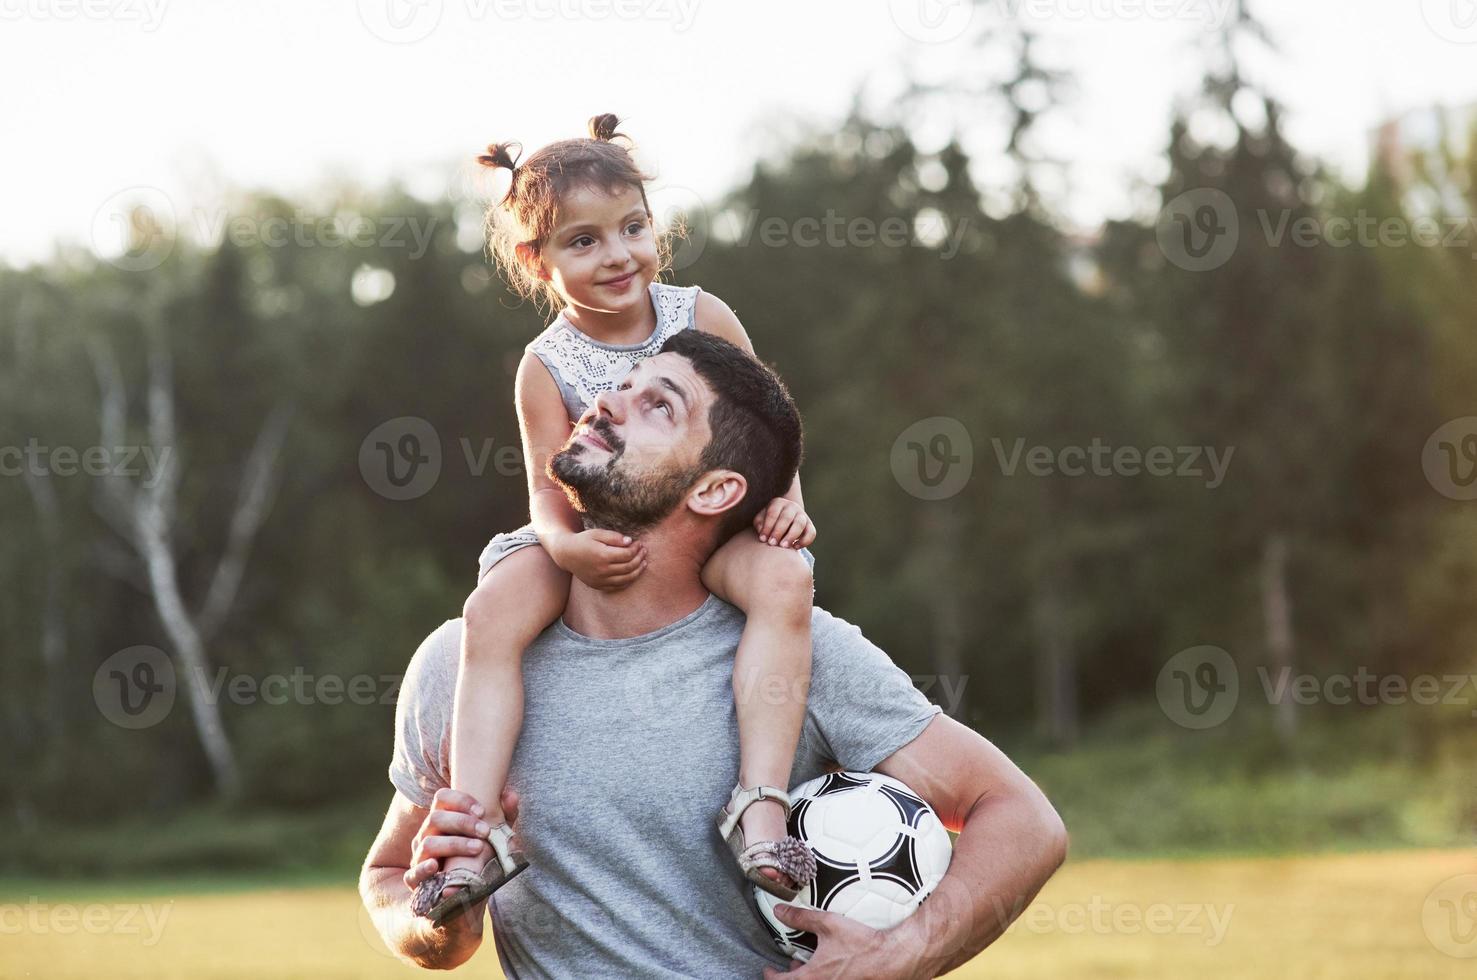 se trata de la familia. Foto de papá con su hija en la hermosa hierba y bosques al fondo